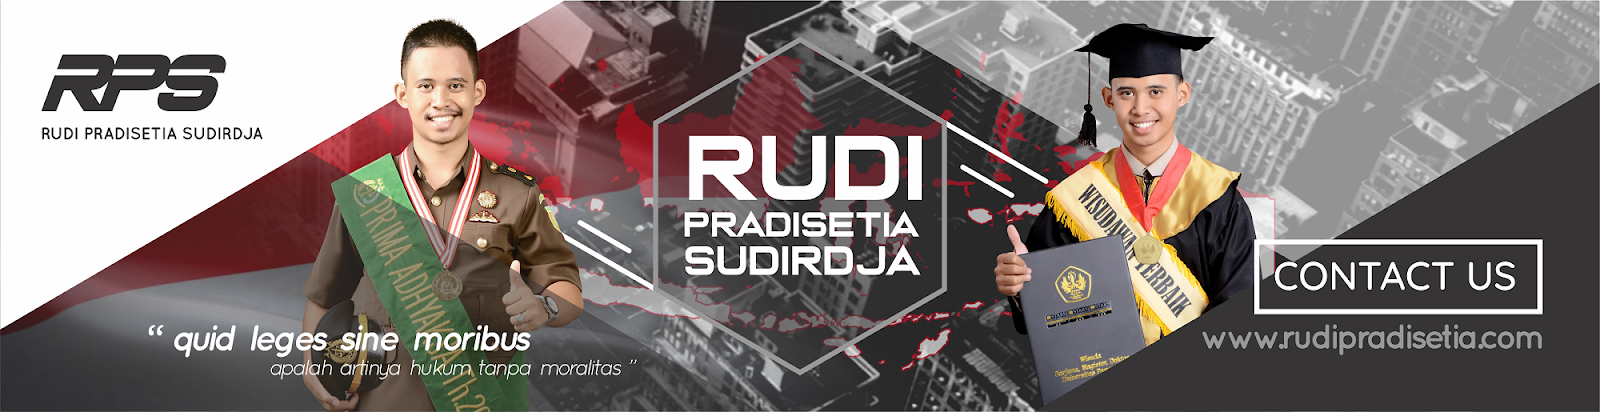 Rudi Pradisetia Sudirdja